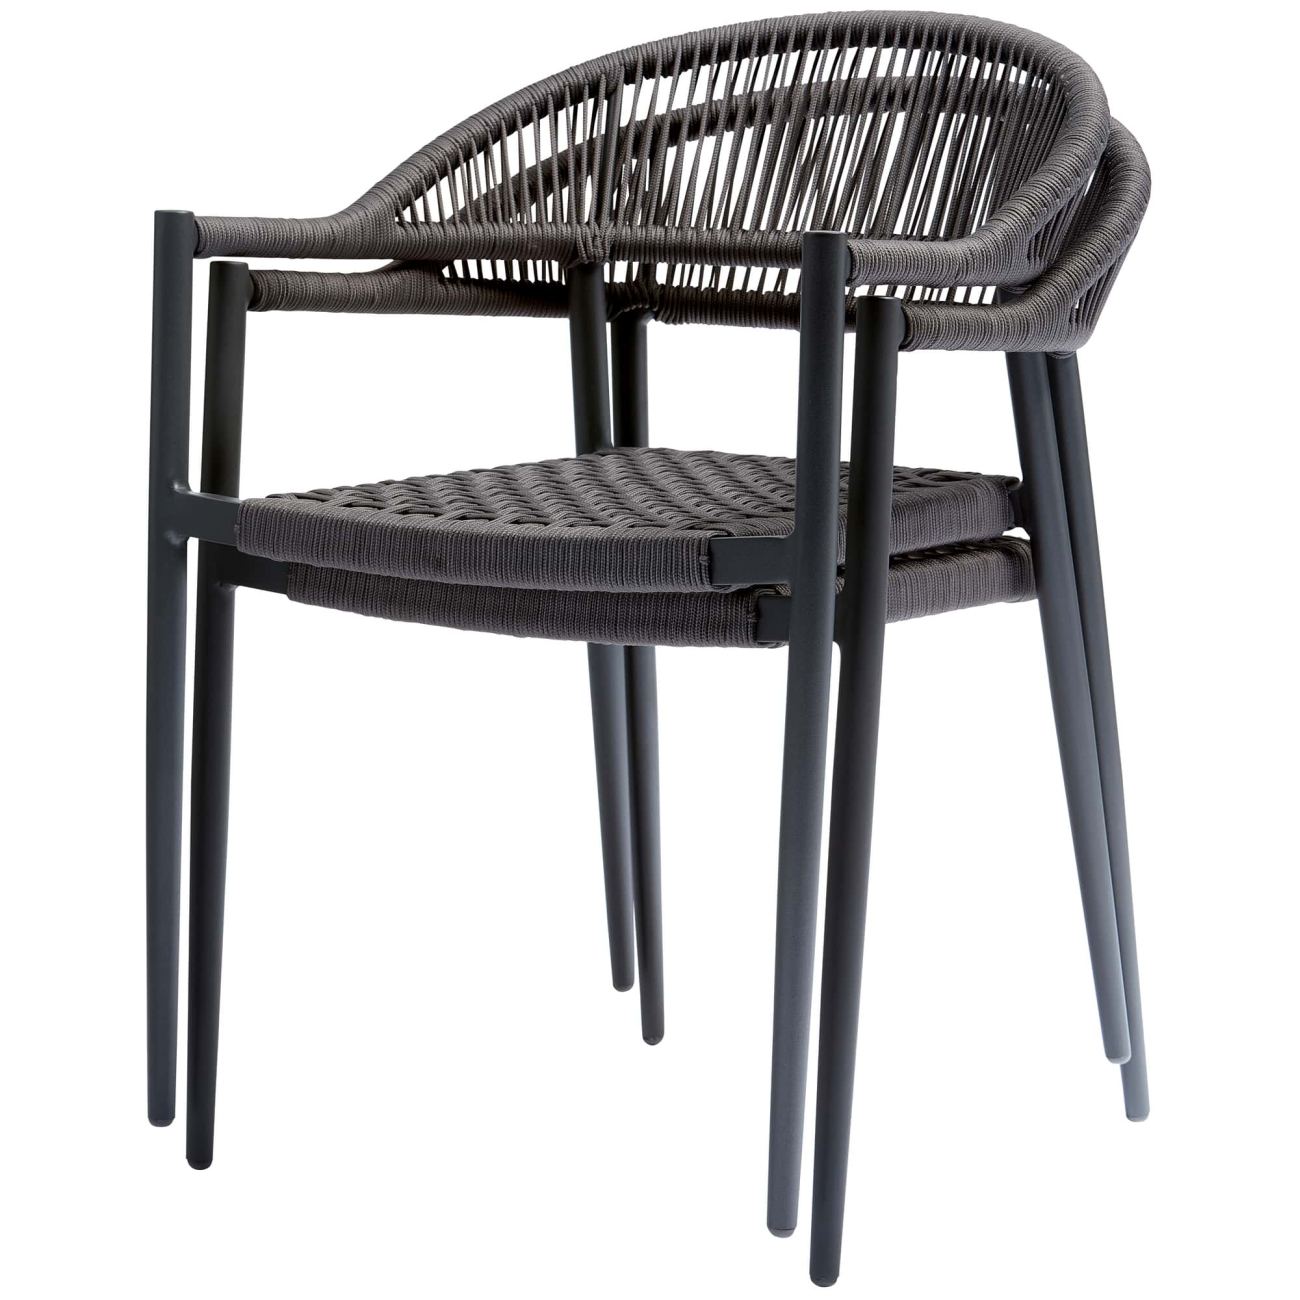 Der Gartenstuhl Yellow überzeugt mit seinem modernen Design. Gefertigt wurde er aus geflochtenem Seil, welches einen dunkelgrauen Farbton besitzt. Das Gestell ist aus Aluminium und hat eine dunkelgraue Farbe. Der Stuhl besitzt eine Sitzhöhe von 45 cm.